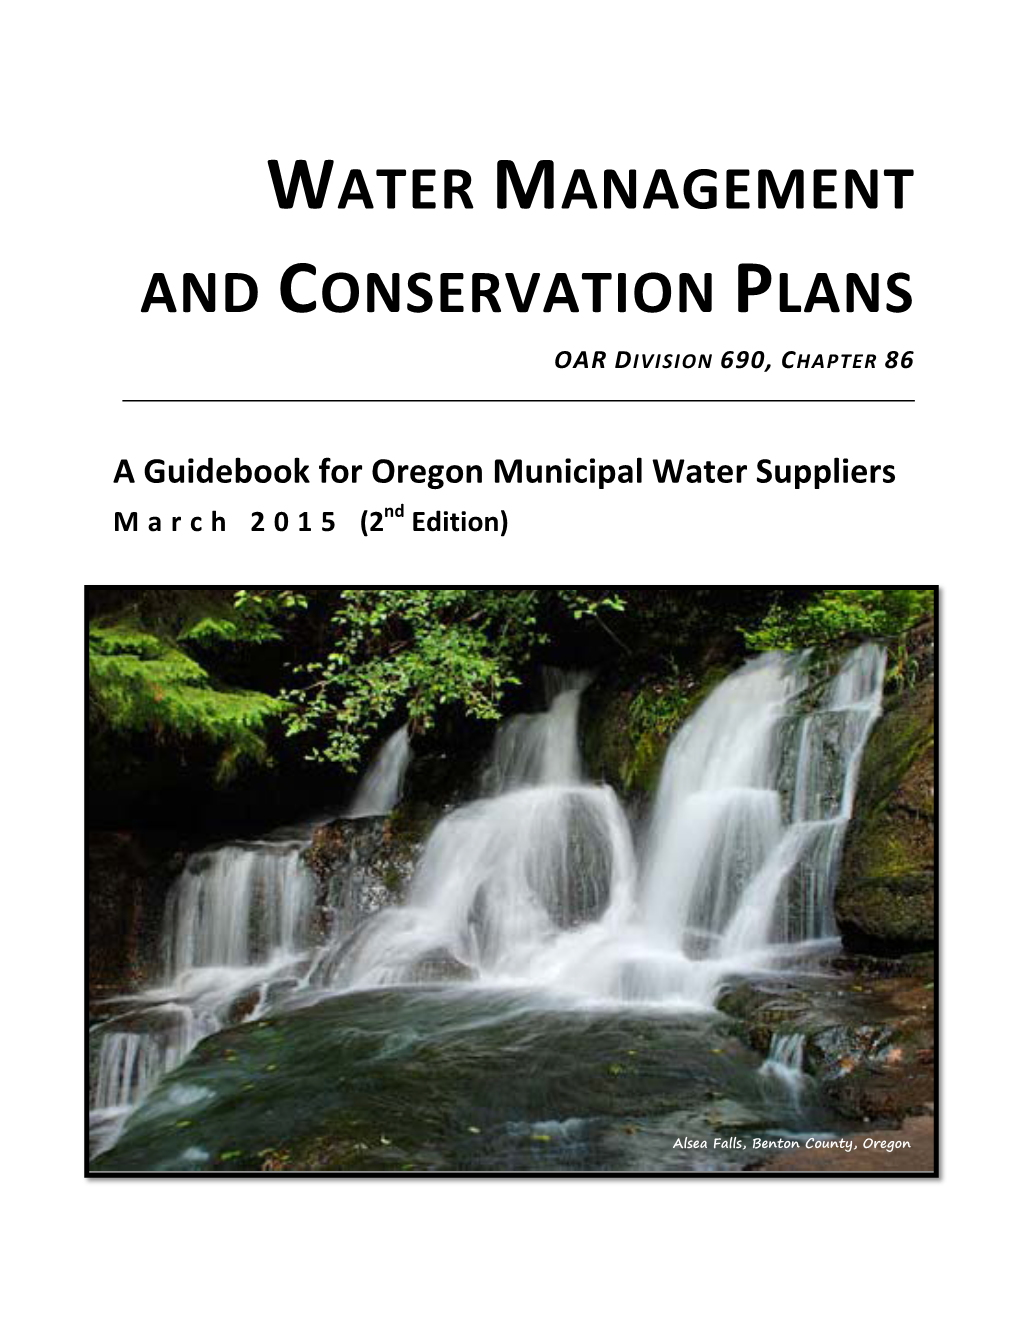 A Guide Book for Preparing a Municipal WMCP